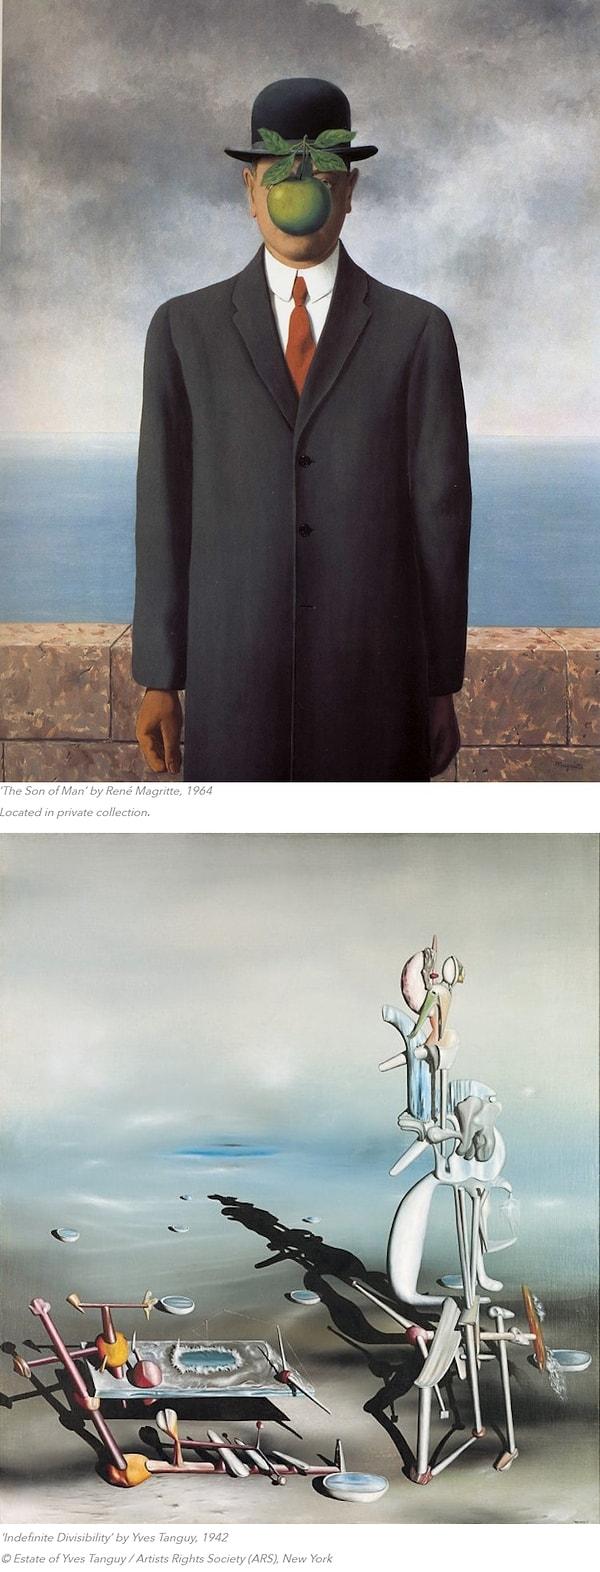 Gerçek ile fantezi arasındaki bu çekim Rene Magritte ve Yves Tanguy çalışmalarında da belirgindir.